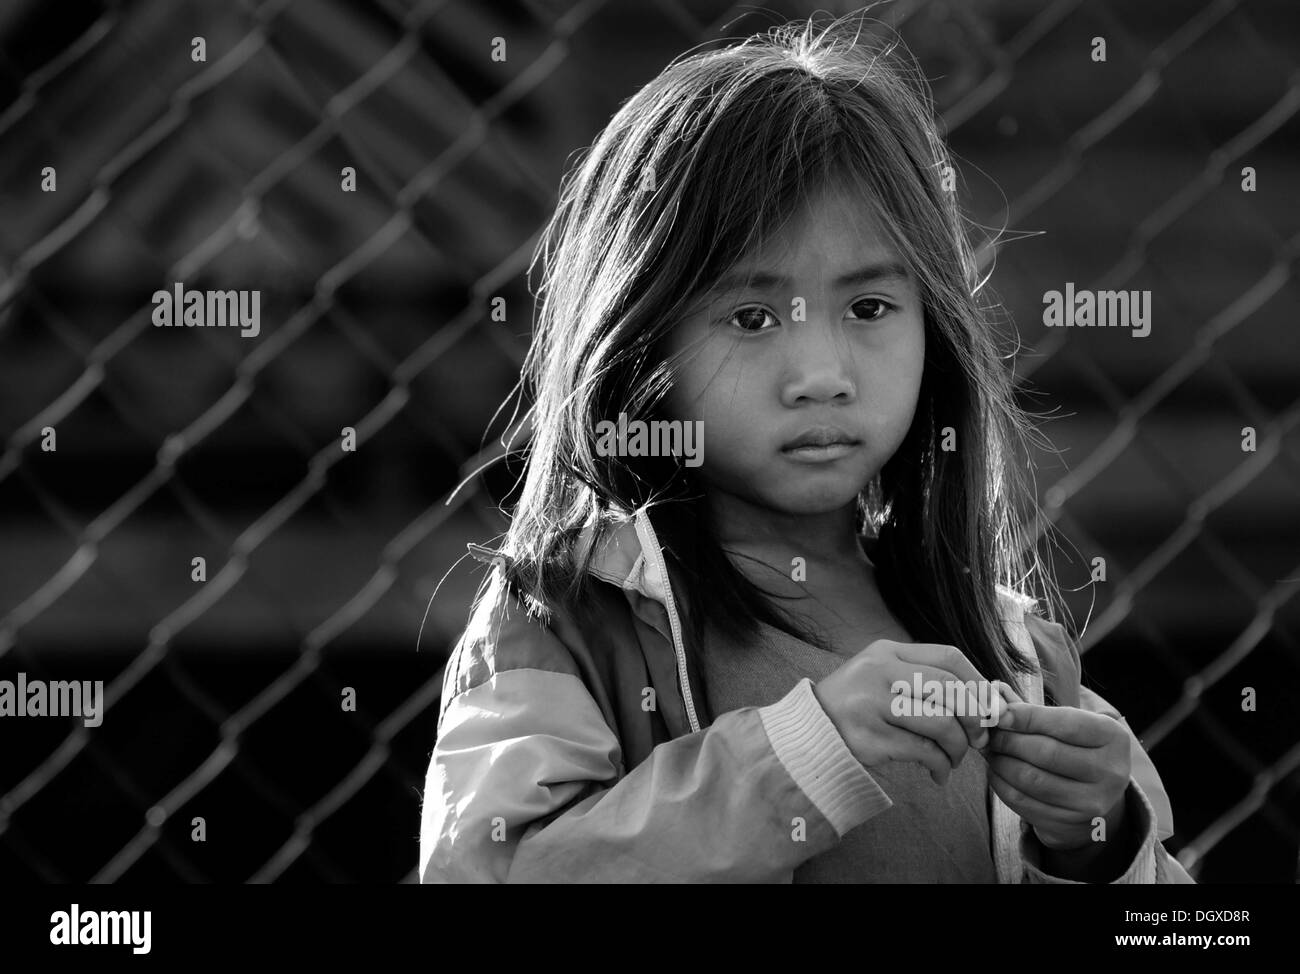 Ragazza triste davanti al recinto nel Laos, Asia sud-orientale, Asia Foto Stock